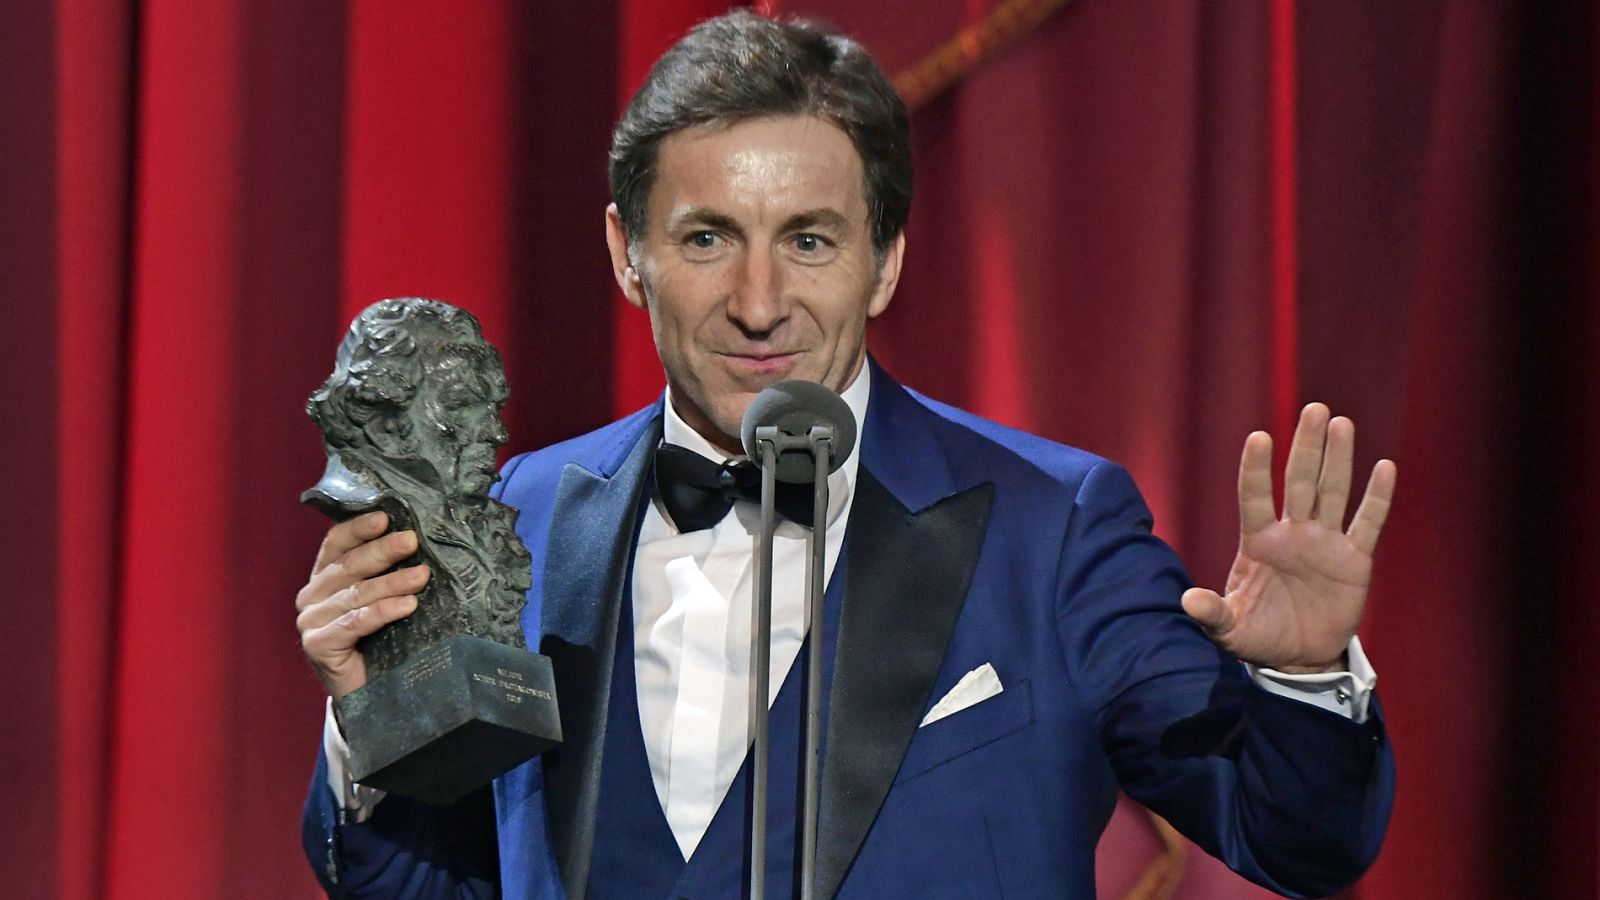 Premios Goya: AAntonio de la Torre gana el Goya a mejor actor con 'El reino' - RTVE.es